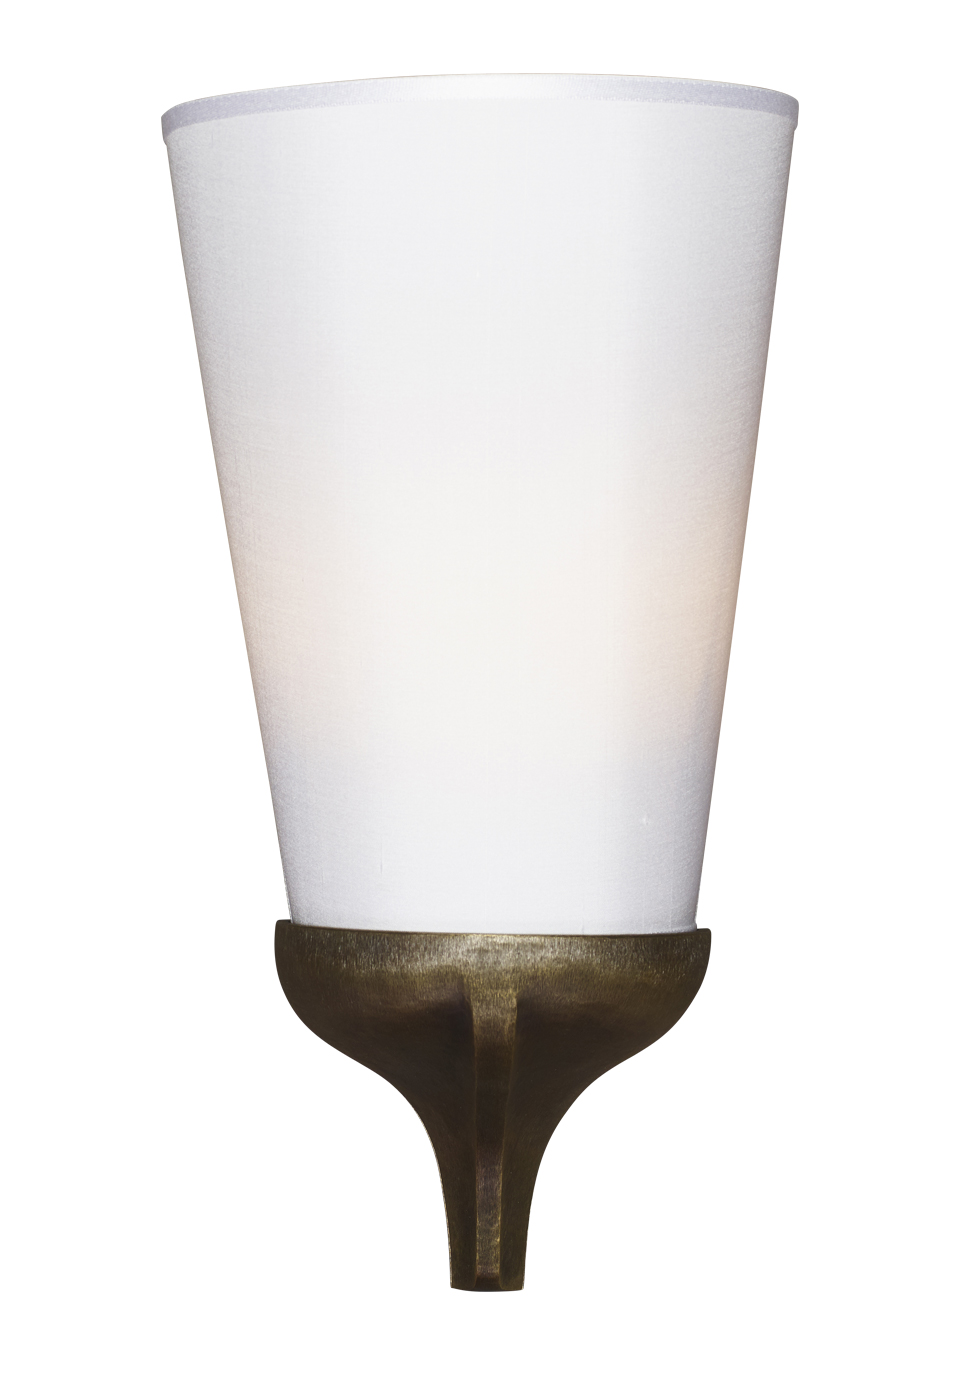 Cleo — настенная лампа из бронзы с льняным, хлопковым или шелковым абажуром из каталога Promemoria | Promemoria